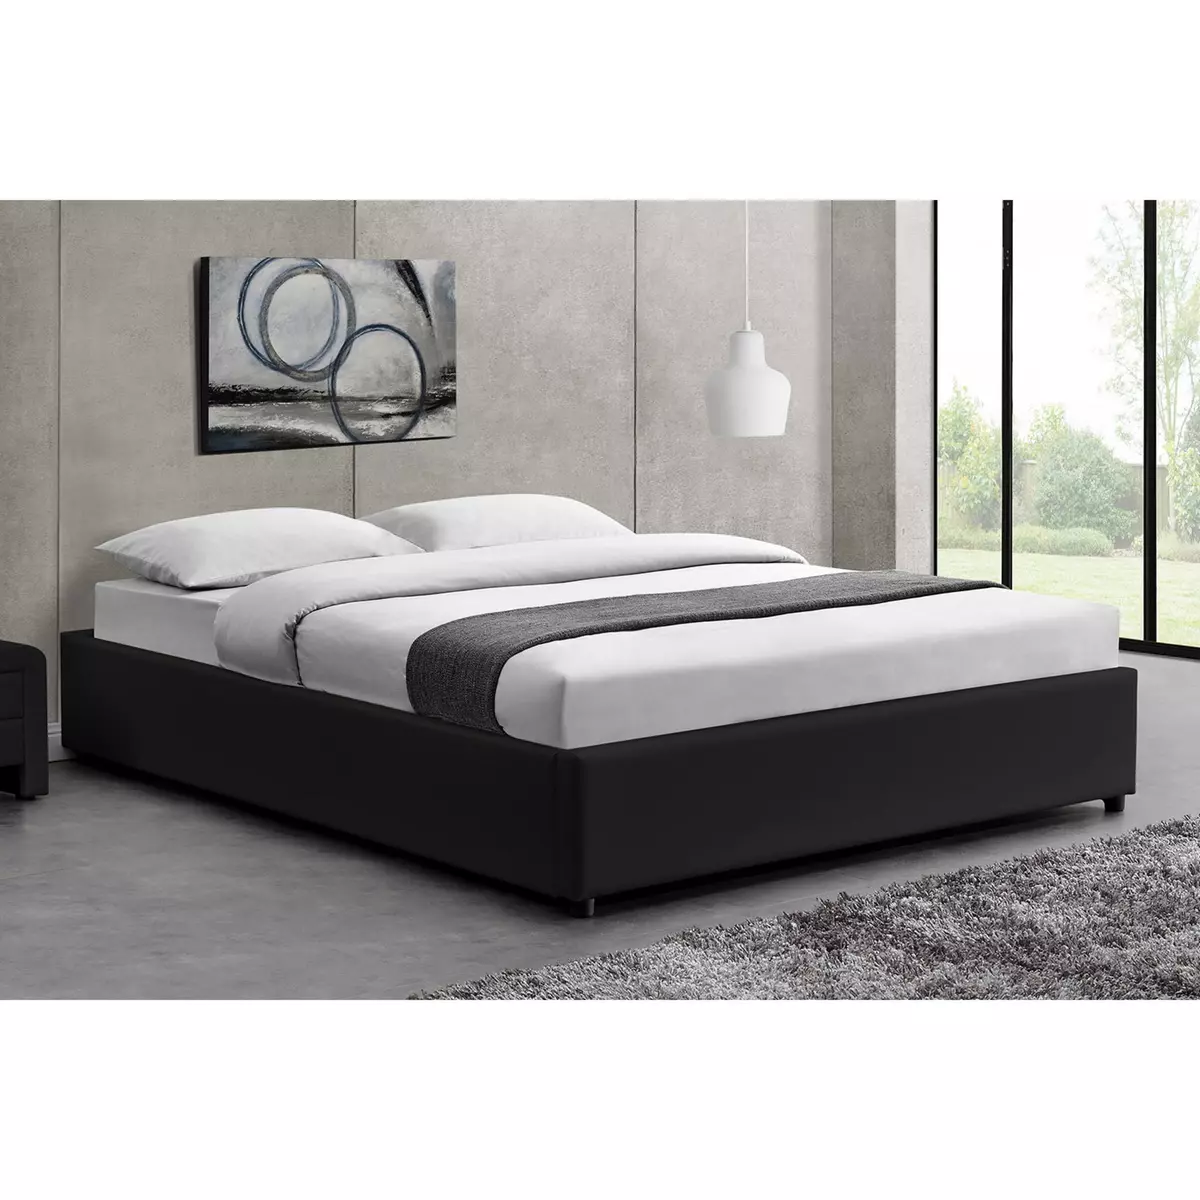 CONCEPT USINE Cadre de lit noir avec coffre de rangement intégré -160x200 cm KENNINGTON